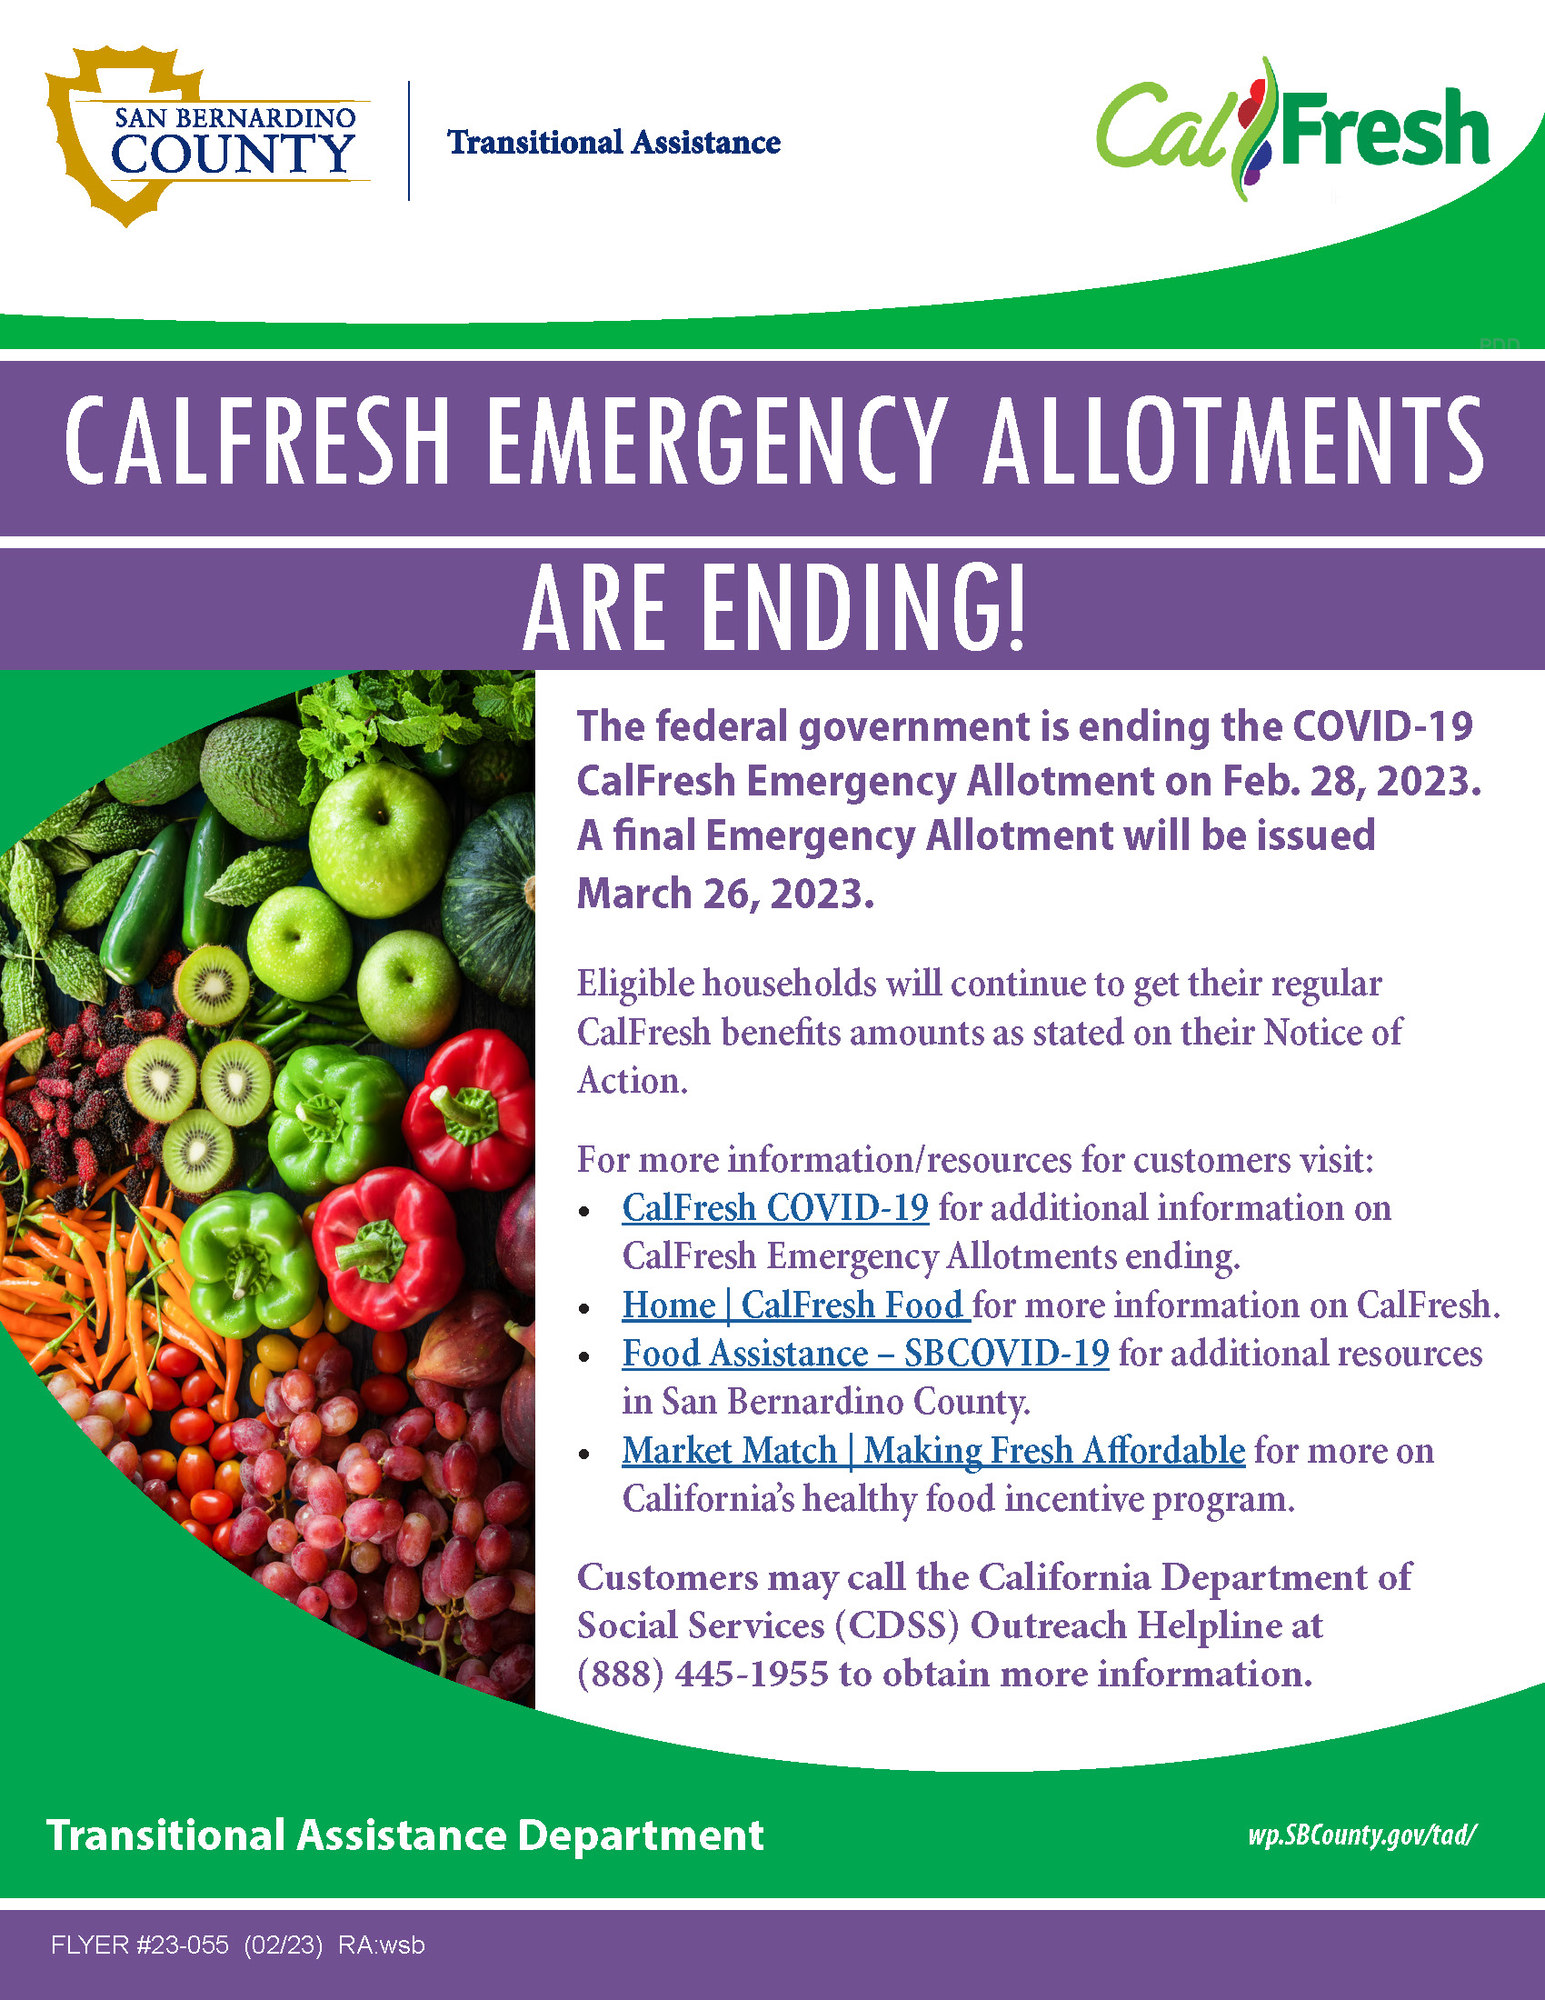 CalFresh emergency benefits to end Feb 28